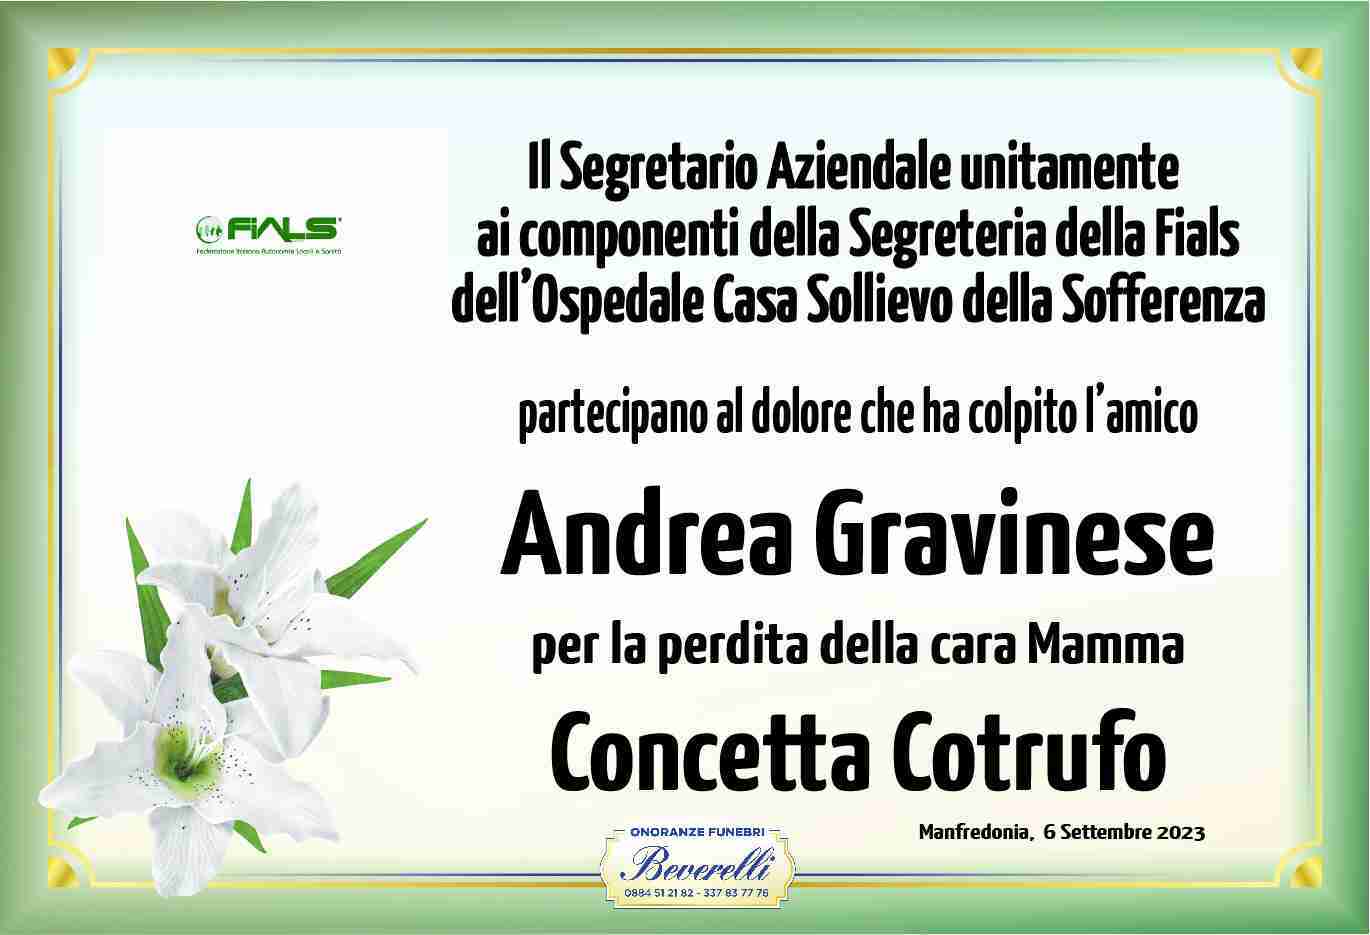 Concetta Cotrufo